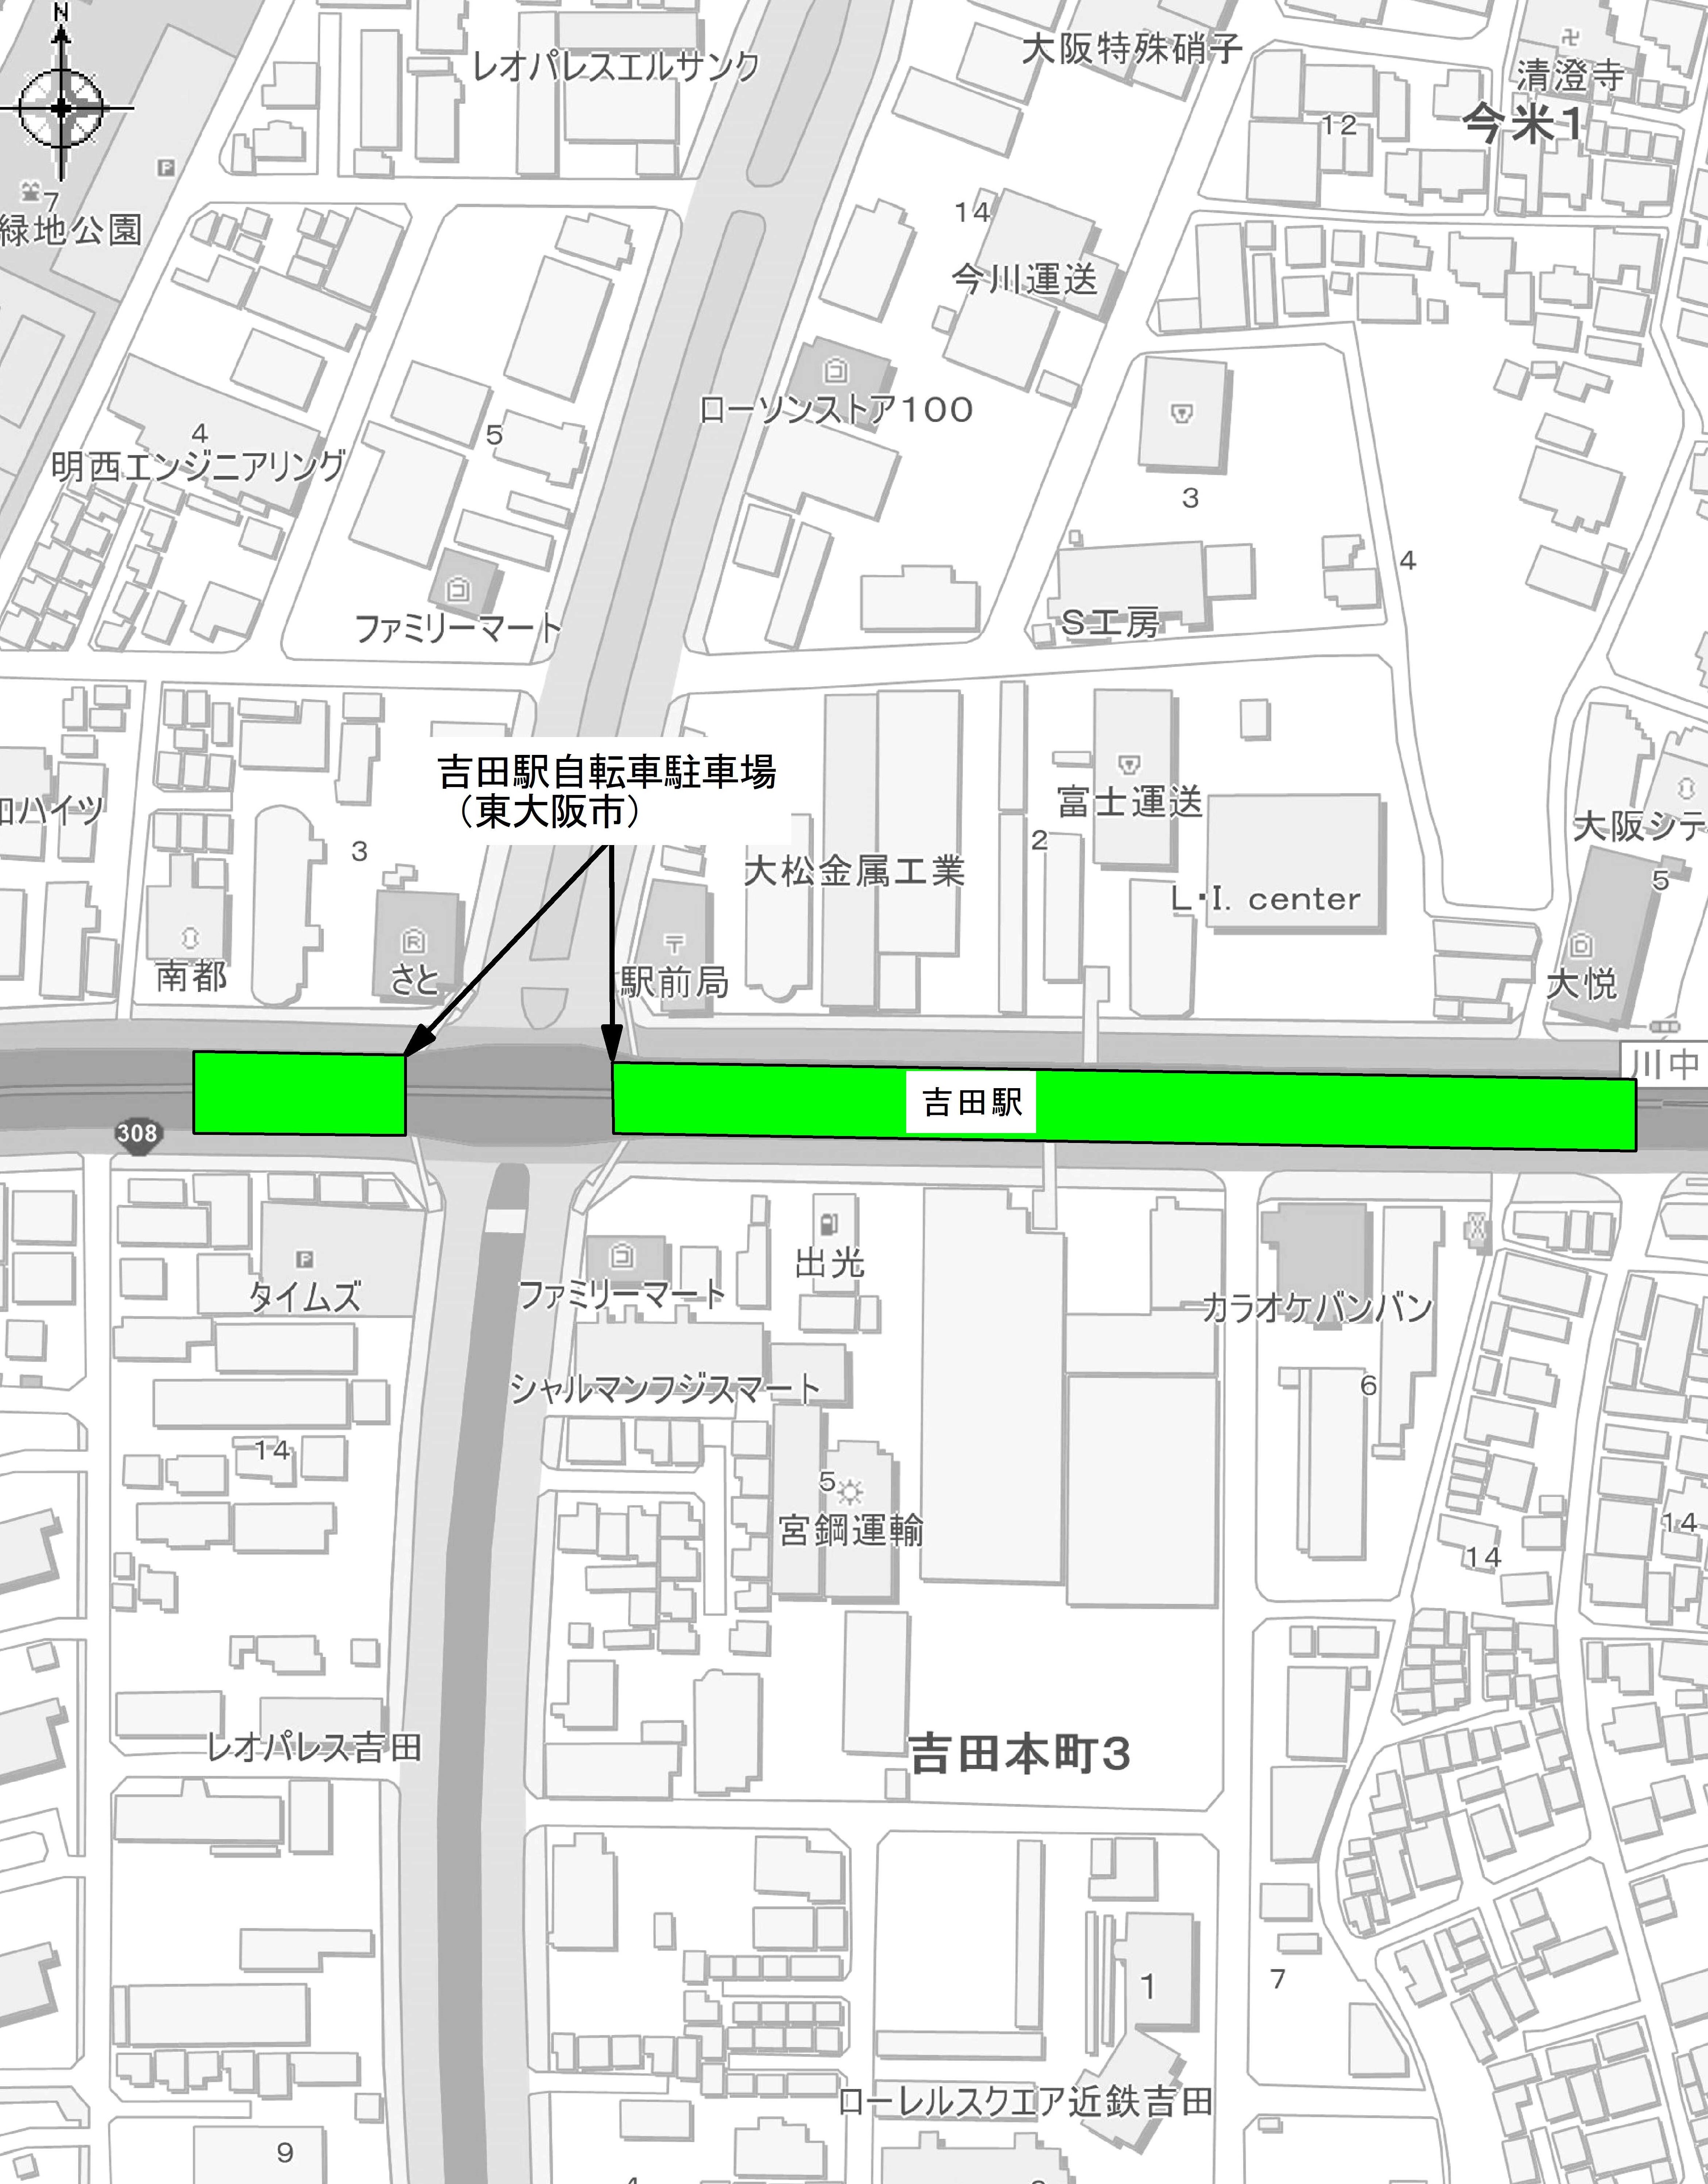 吉田駅周辺自転車駐車場案内図